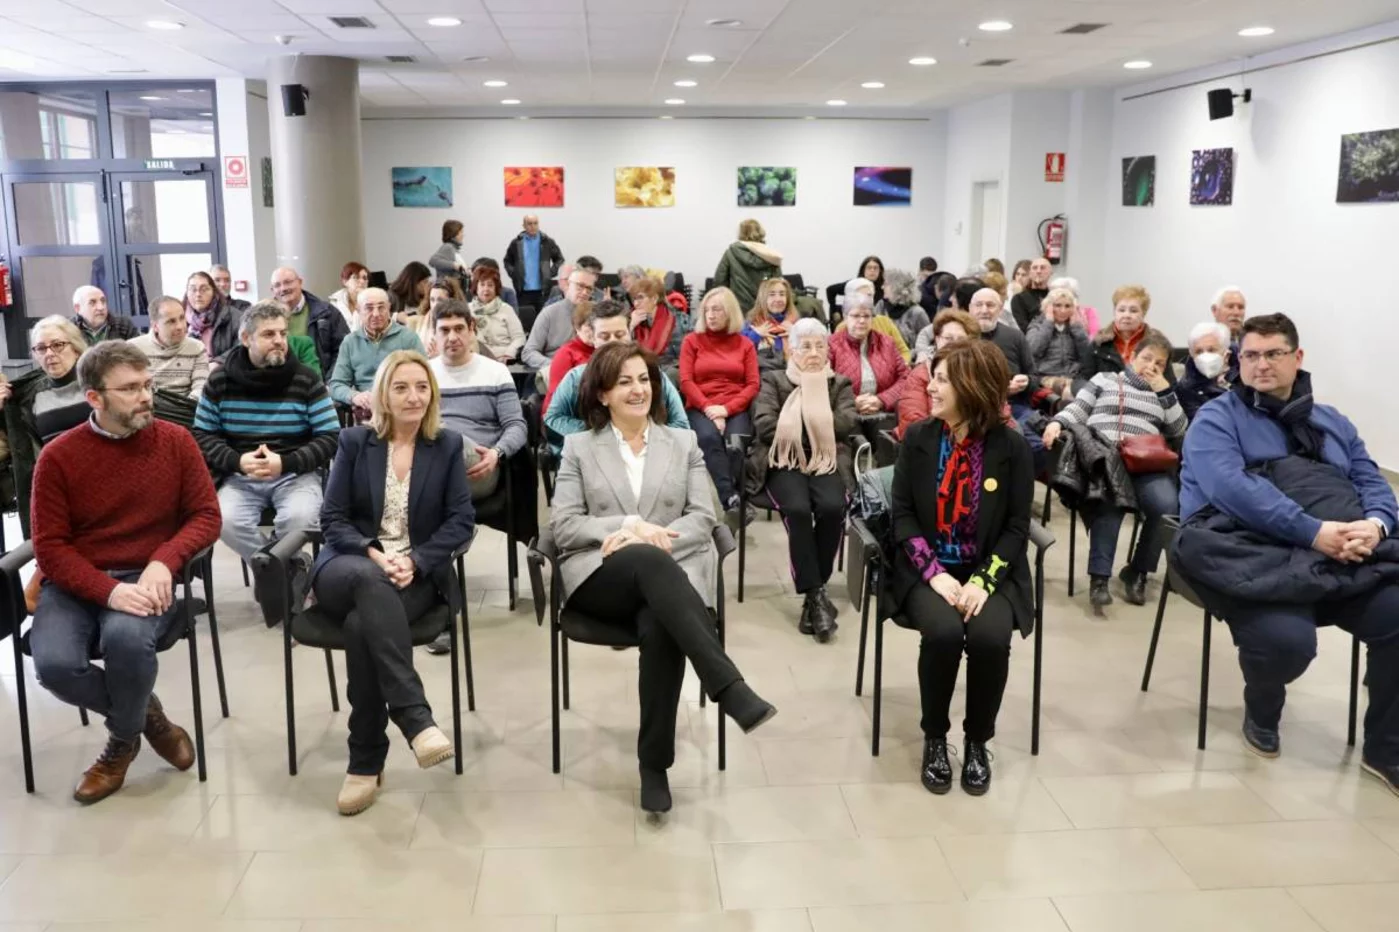 La presidenta del Gobierno de La Rioja, Concha Andreu, y la consejera de Salud, María Somalo, en la presentación del Aula del Medicamento. Foto: GOBIERNO DE LA RIOJA.